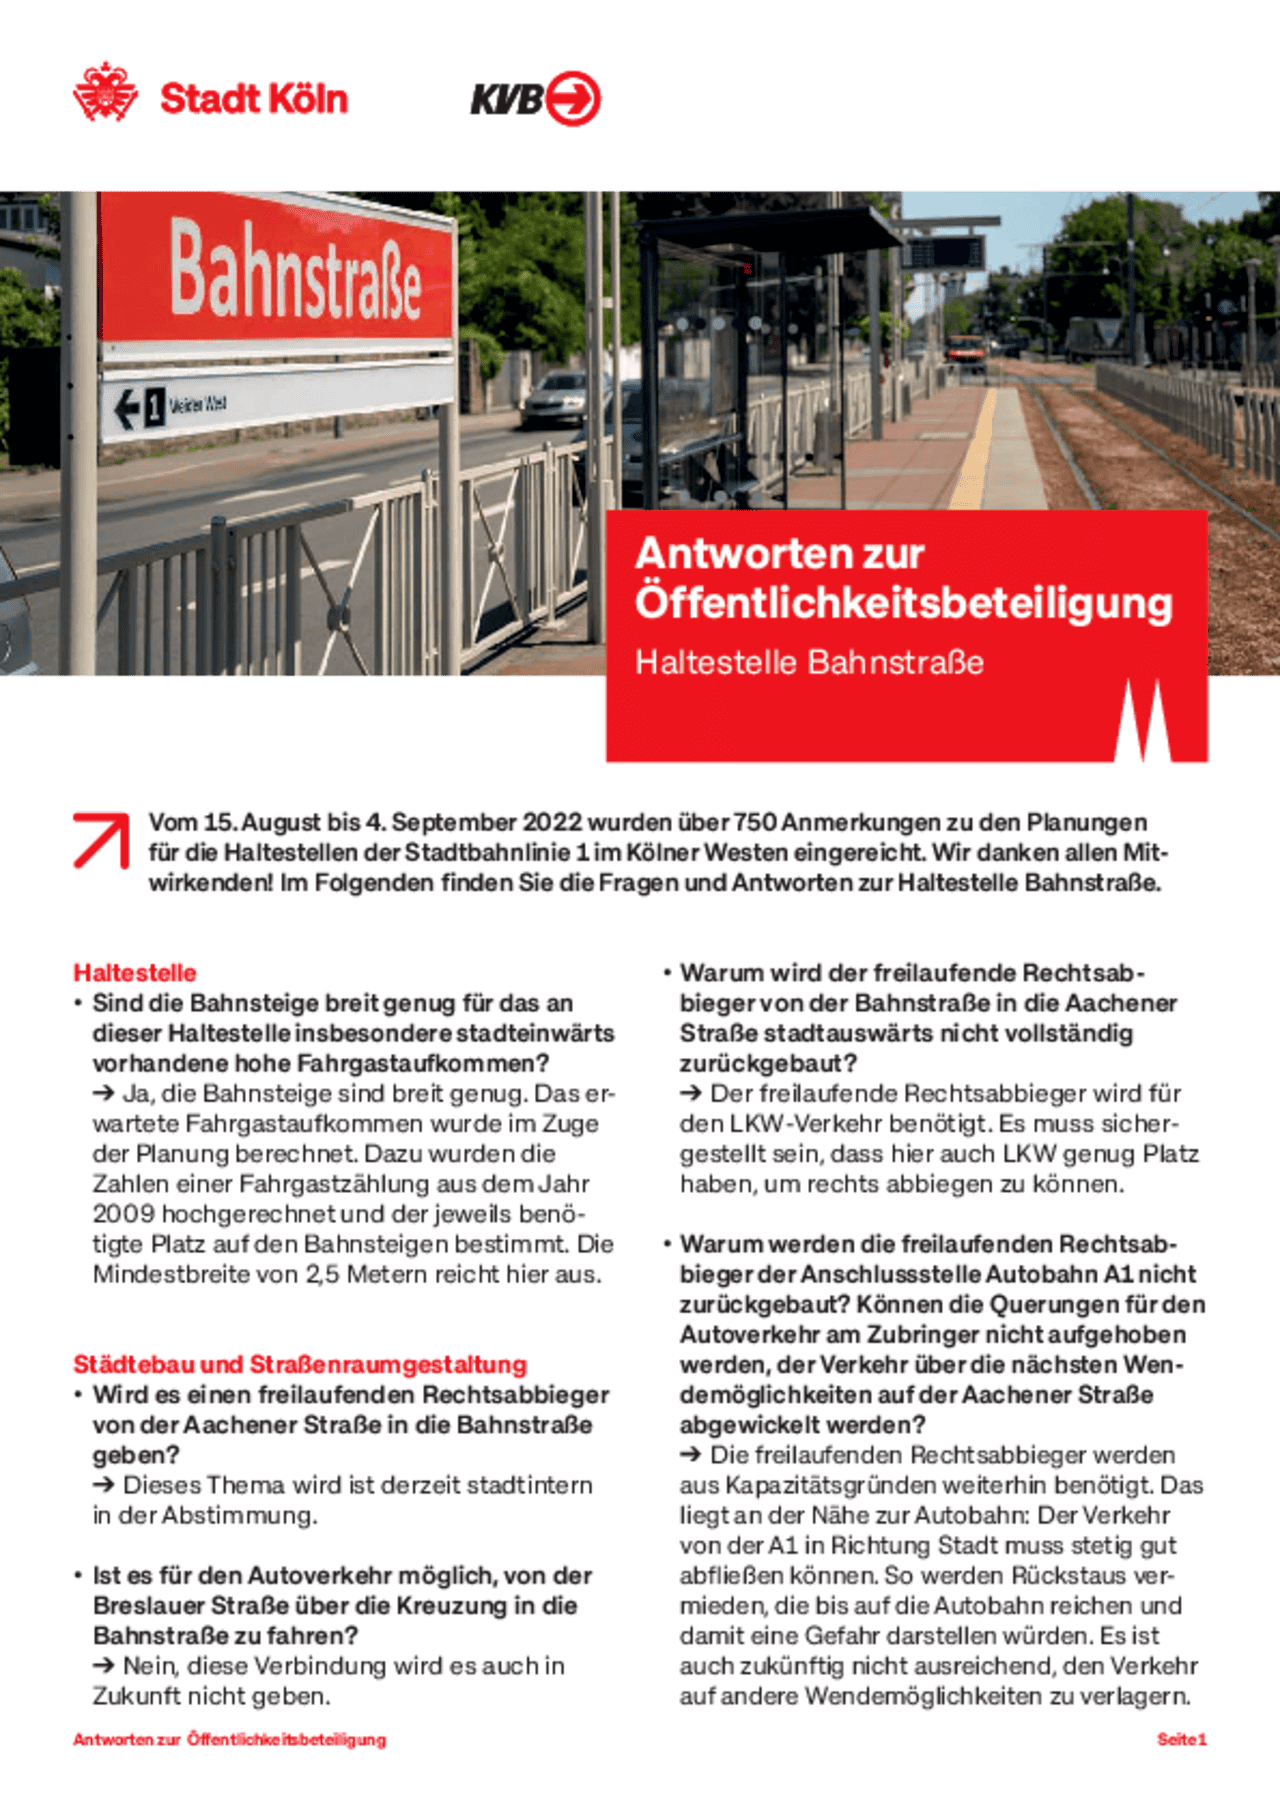 Bildvorschau des Infoblatts zur Haltestelle Bahnstraße